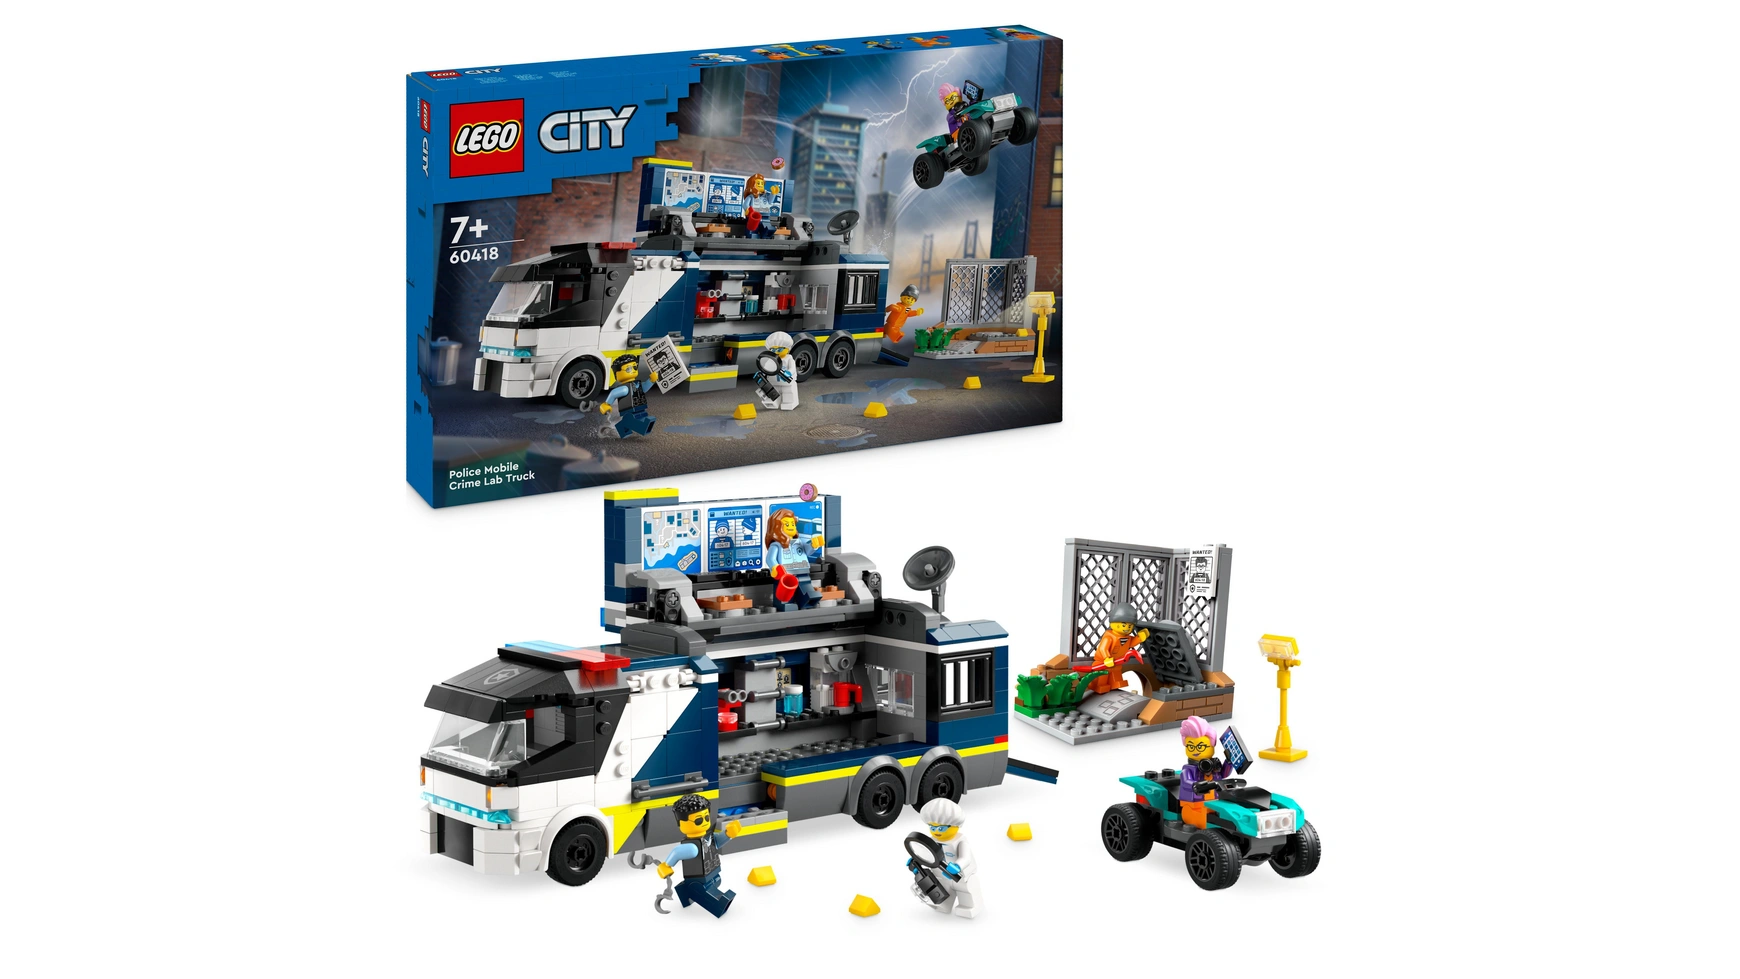 Lego City Полицейский грузовик с лабораторией, полицейский набор с игрушечным грузовиком lego city космический мех набор с игрушками роботами для детей от 6 лет и старше